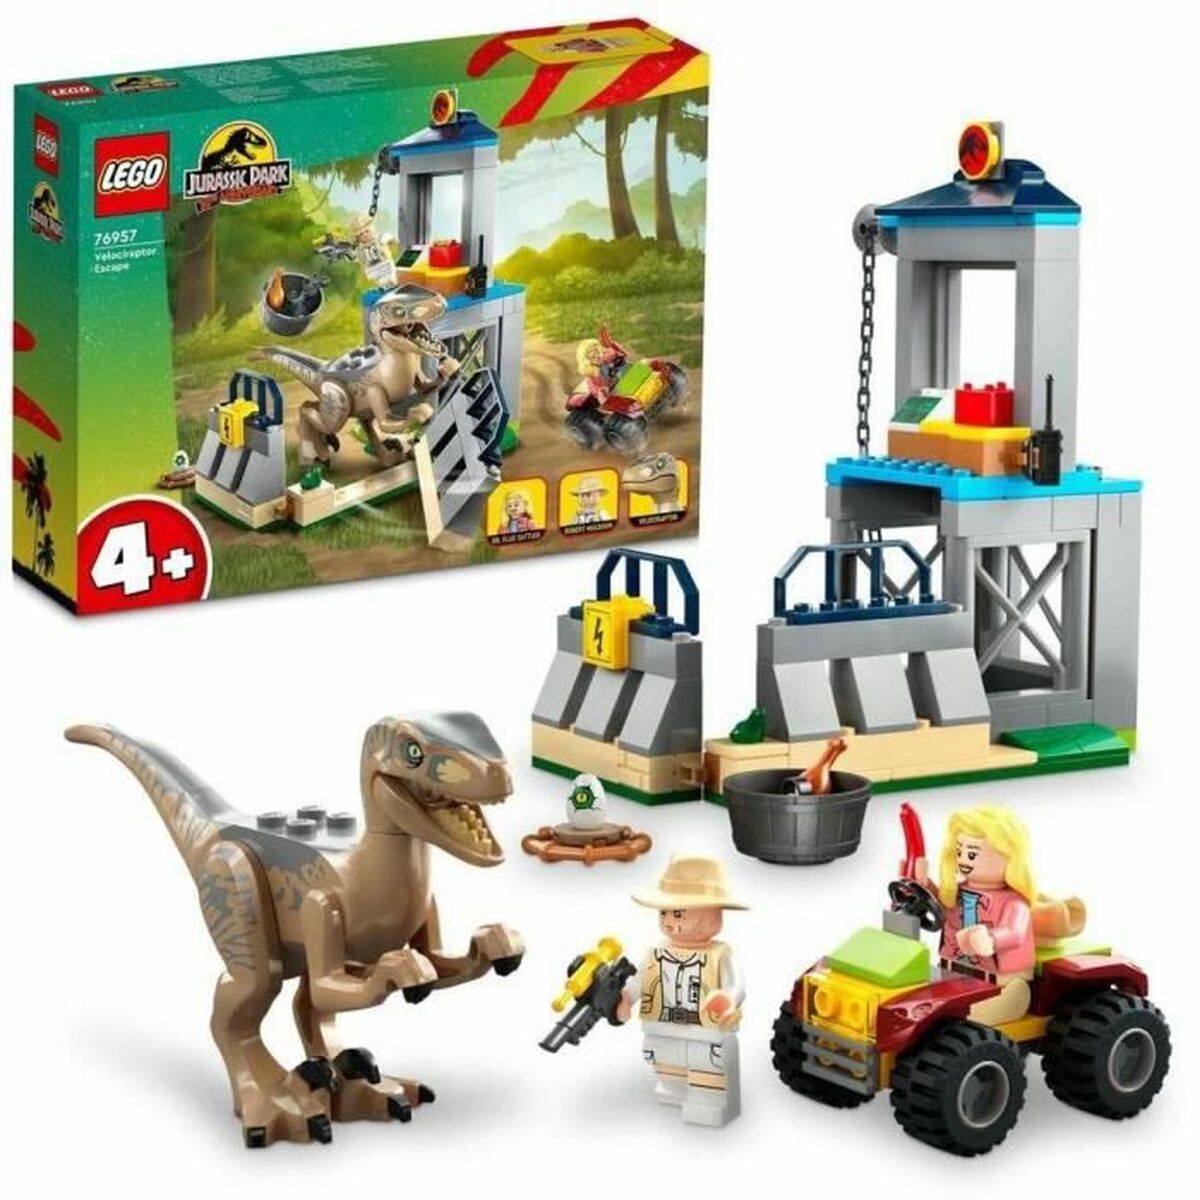 Playset Lego Jurassic Park 76957 - Disponibile in 3-4 giorni lavorativi